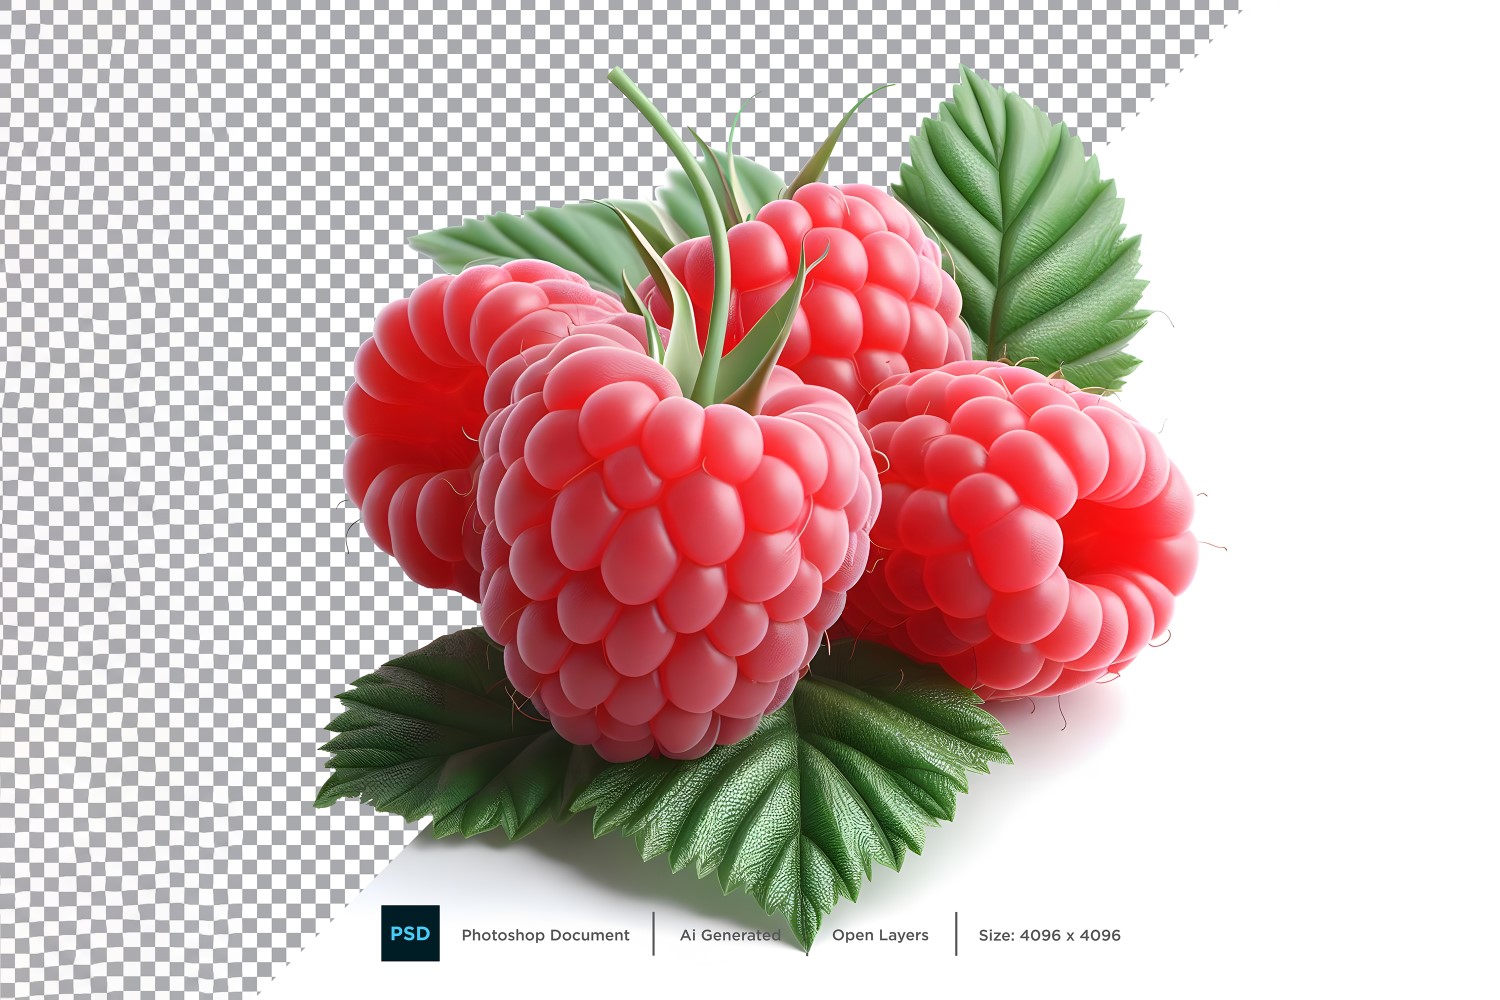 Raspberry Fresh fruit isolated on white background 1.